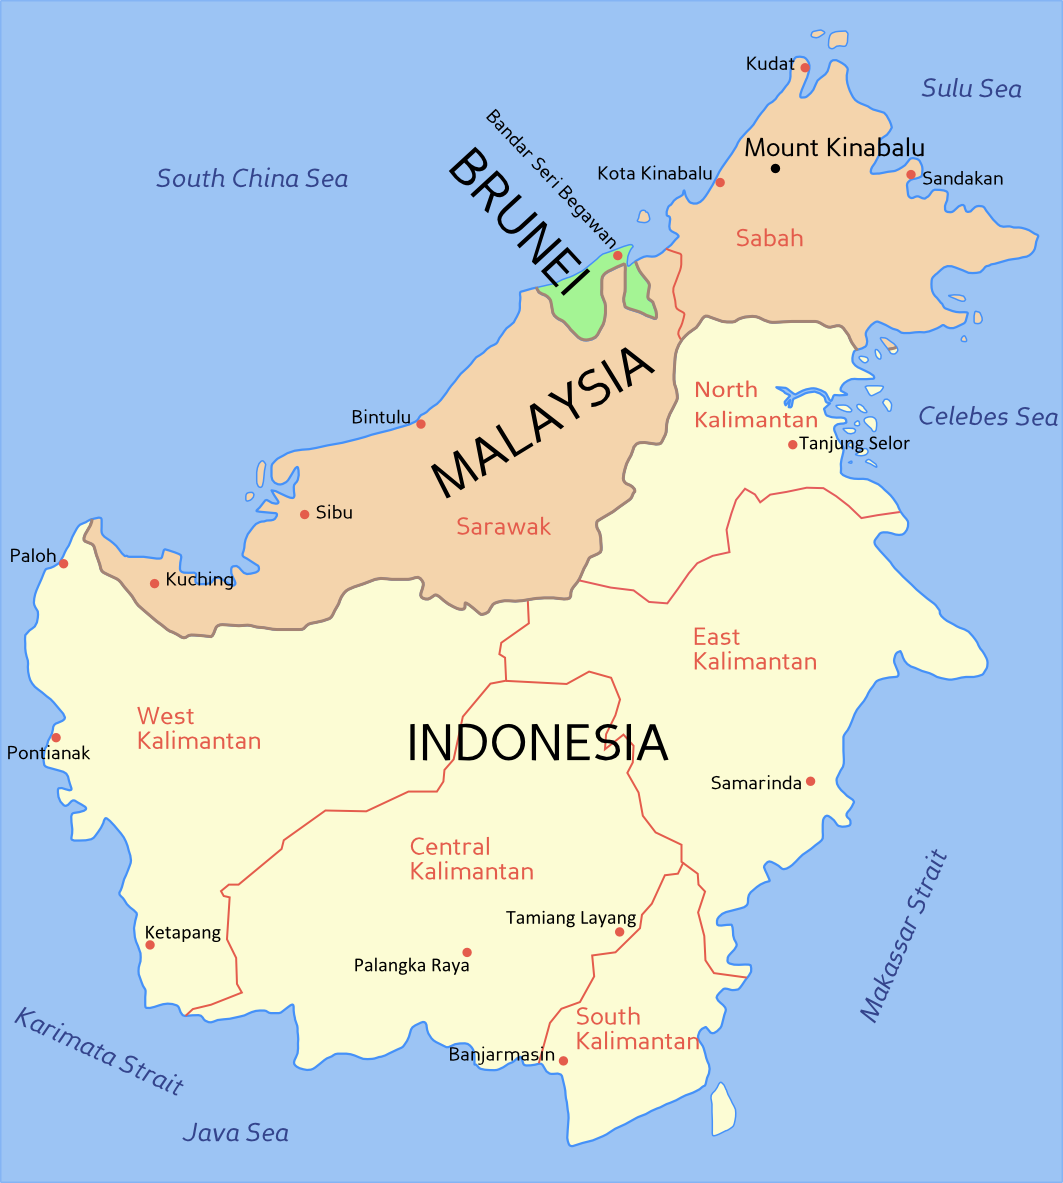 婆罗洲在哪里图片